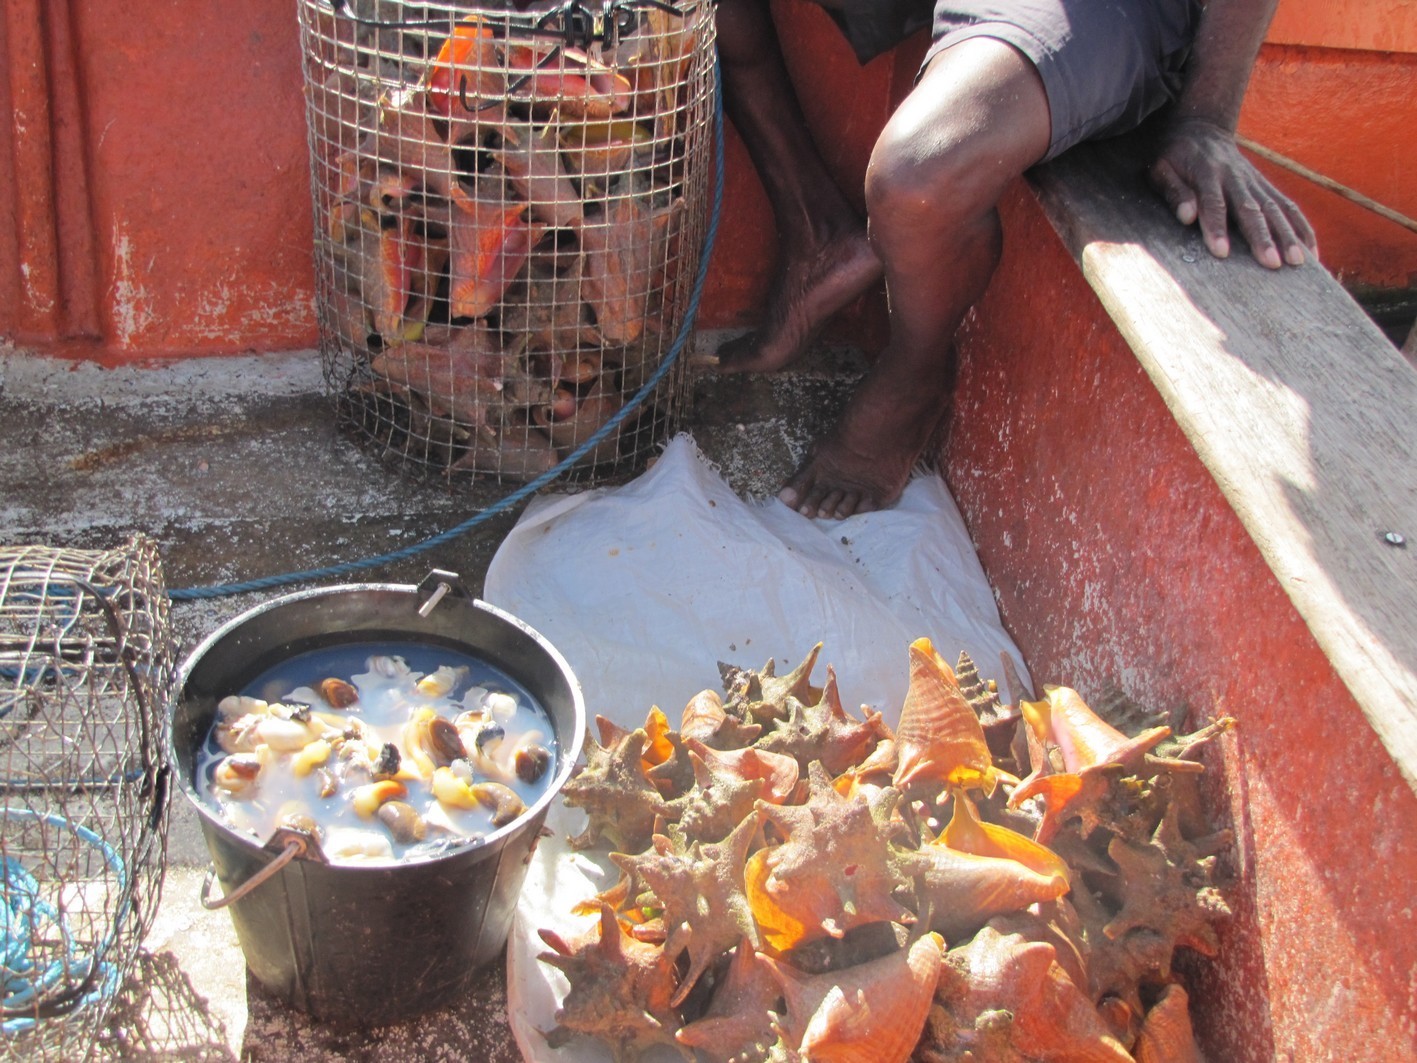     Ouverture de la pêche au lambi le 15 octobre en Guadeloupe

